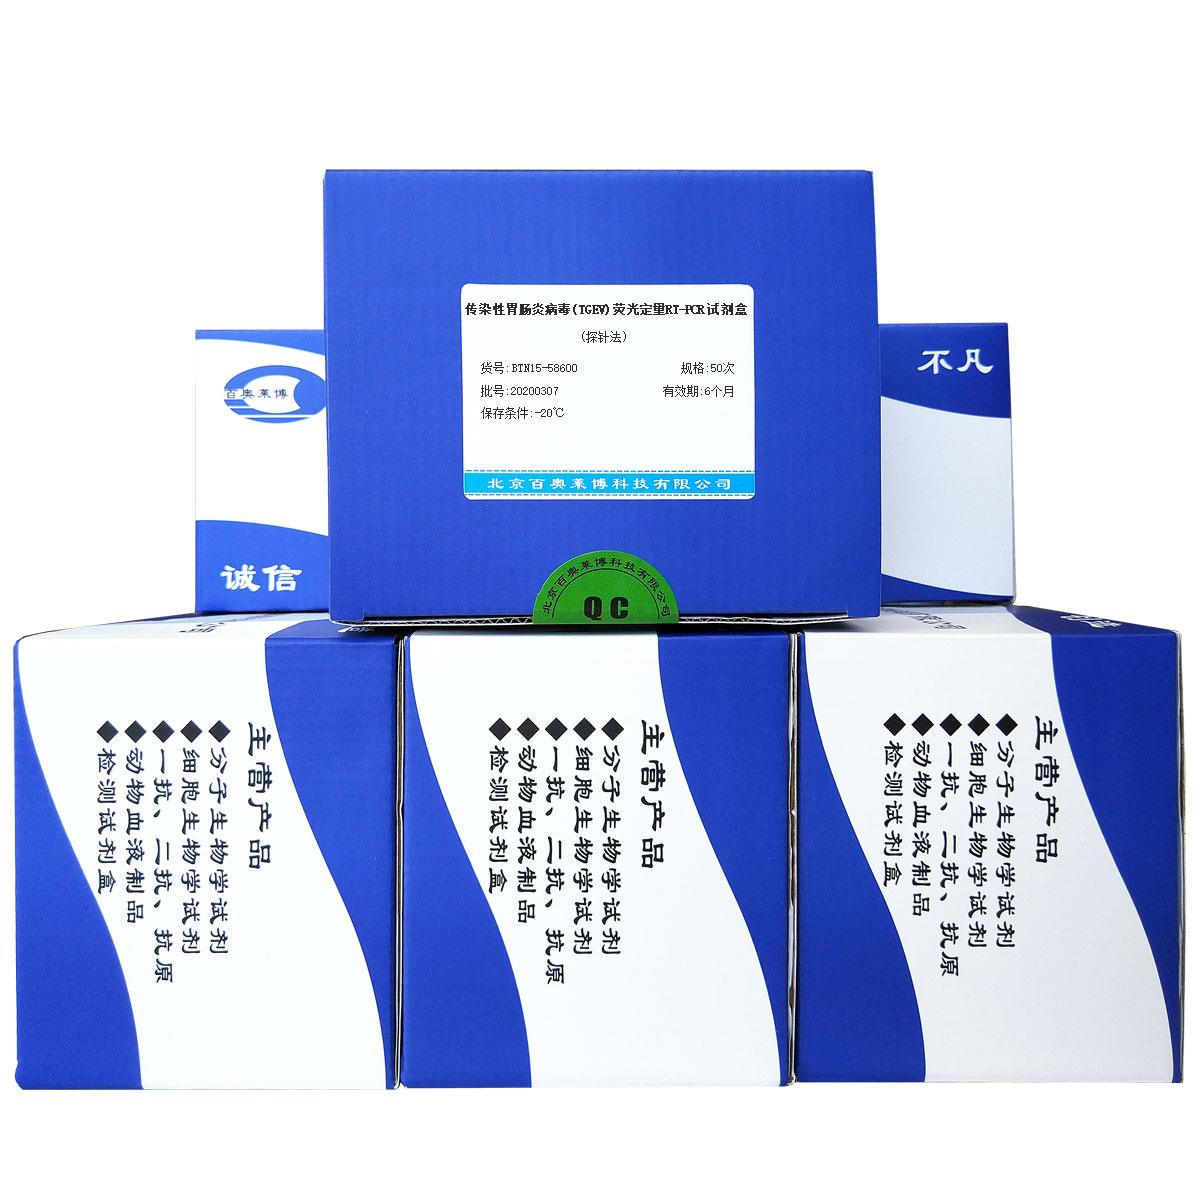 传染性胃肠炎病毒(TGEV)荧光定量RT-PCR试剂盒(探针法)